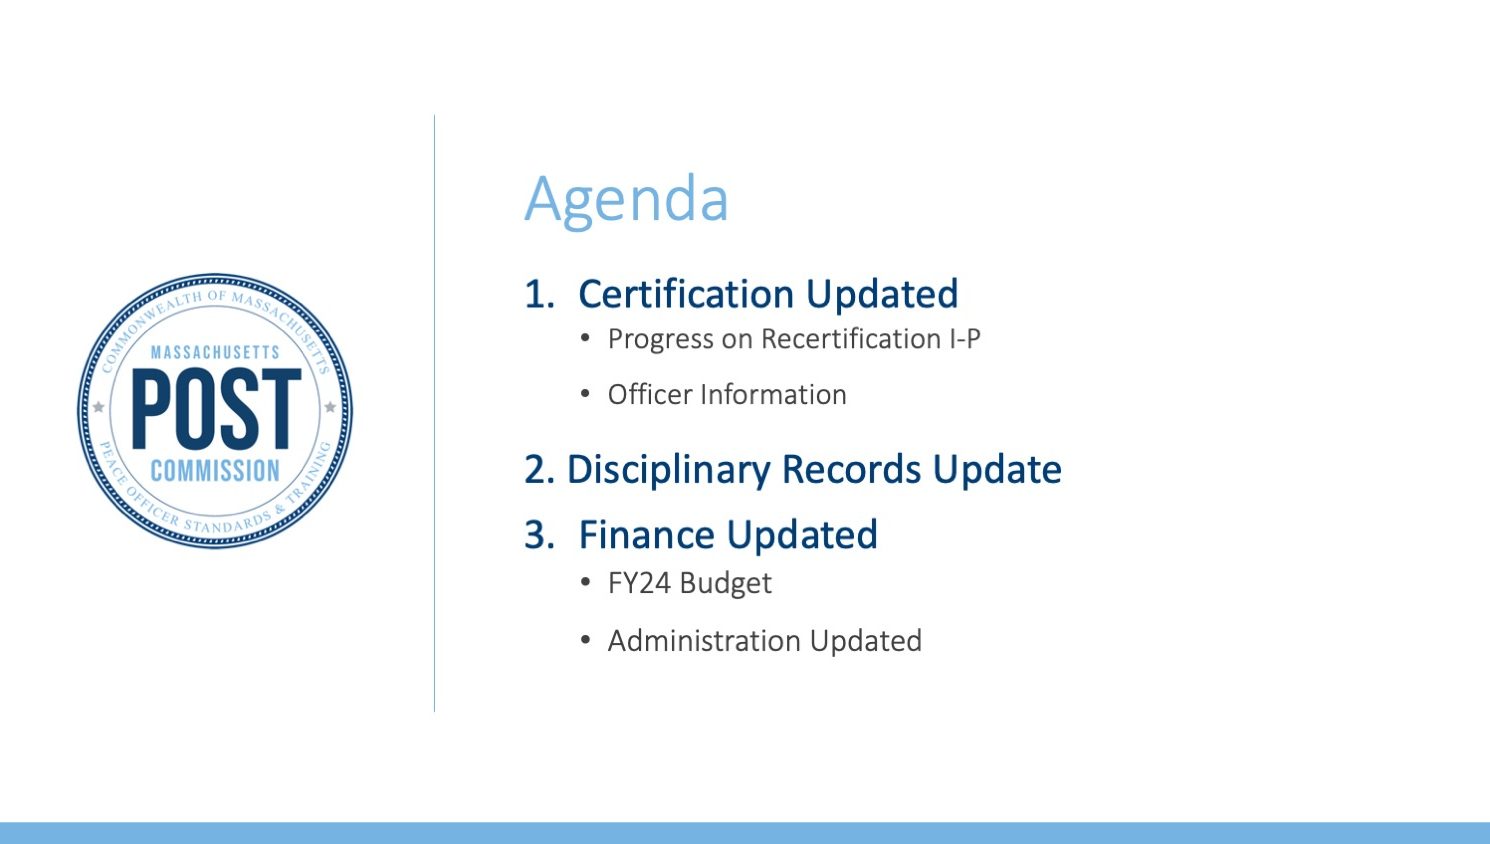 sample powerpoint agenda slide for Massachusetts POST Commission